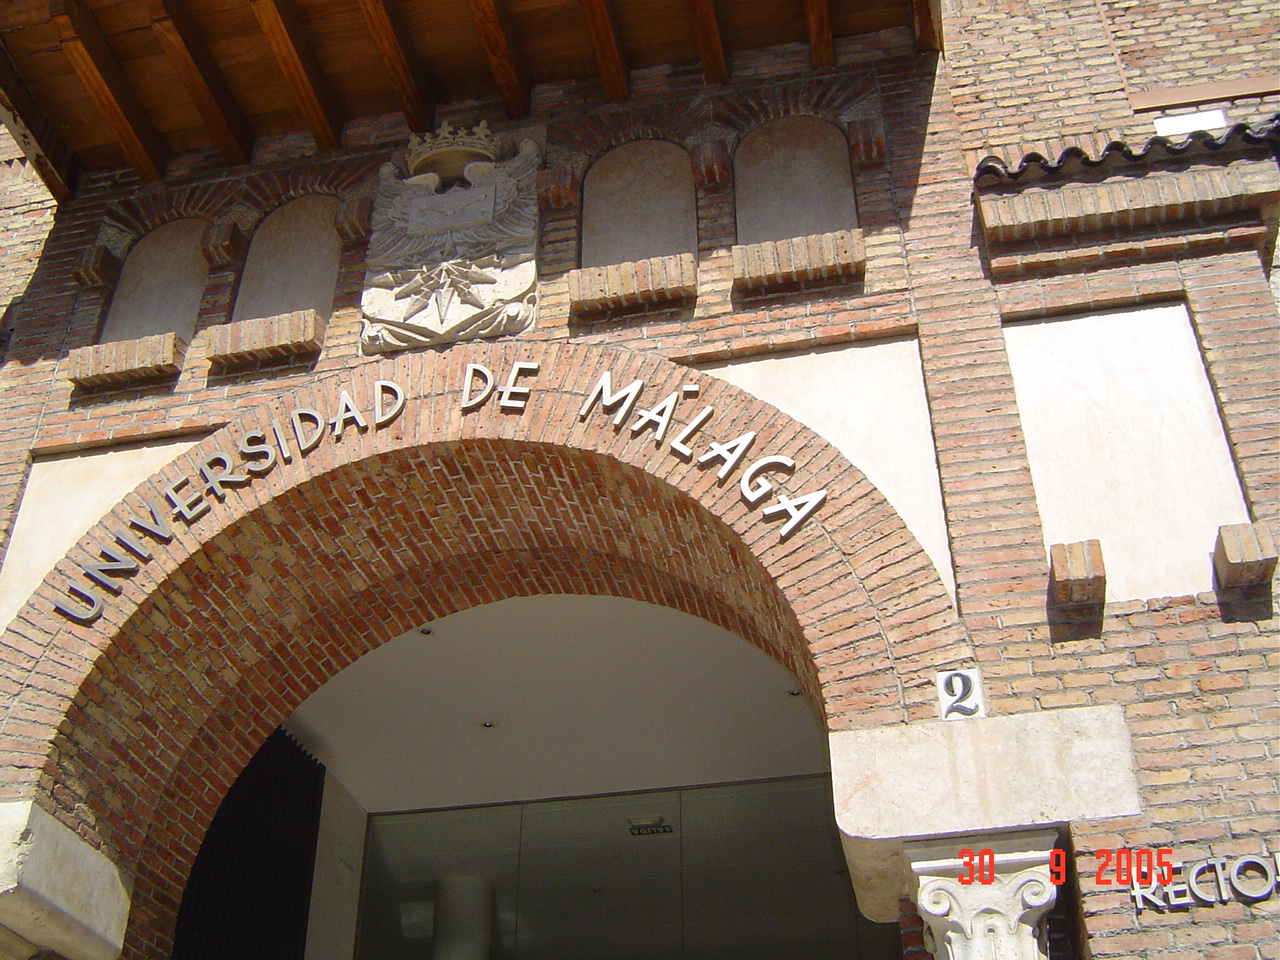 Rectorado de la Universidad de Málaga